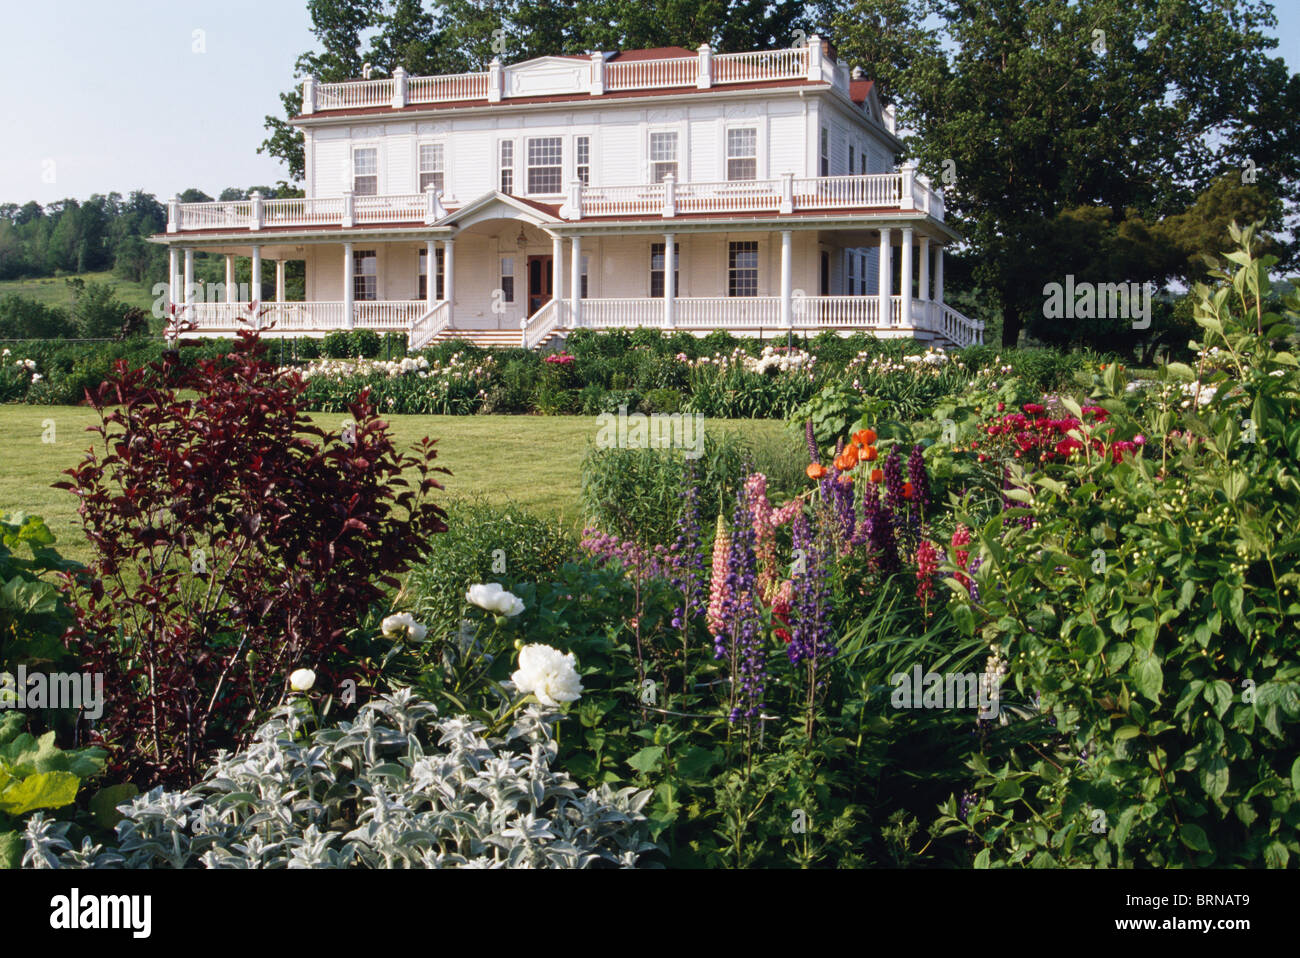 Plantes à fleurs en bordure de pelouse à côté en face de l'Amérique blanche grande maison de campagne de style colonial avec des balcons et vérandas Banque D'Images